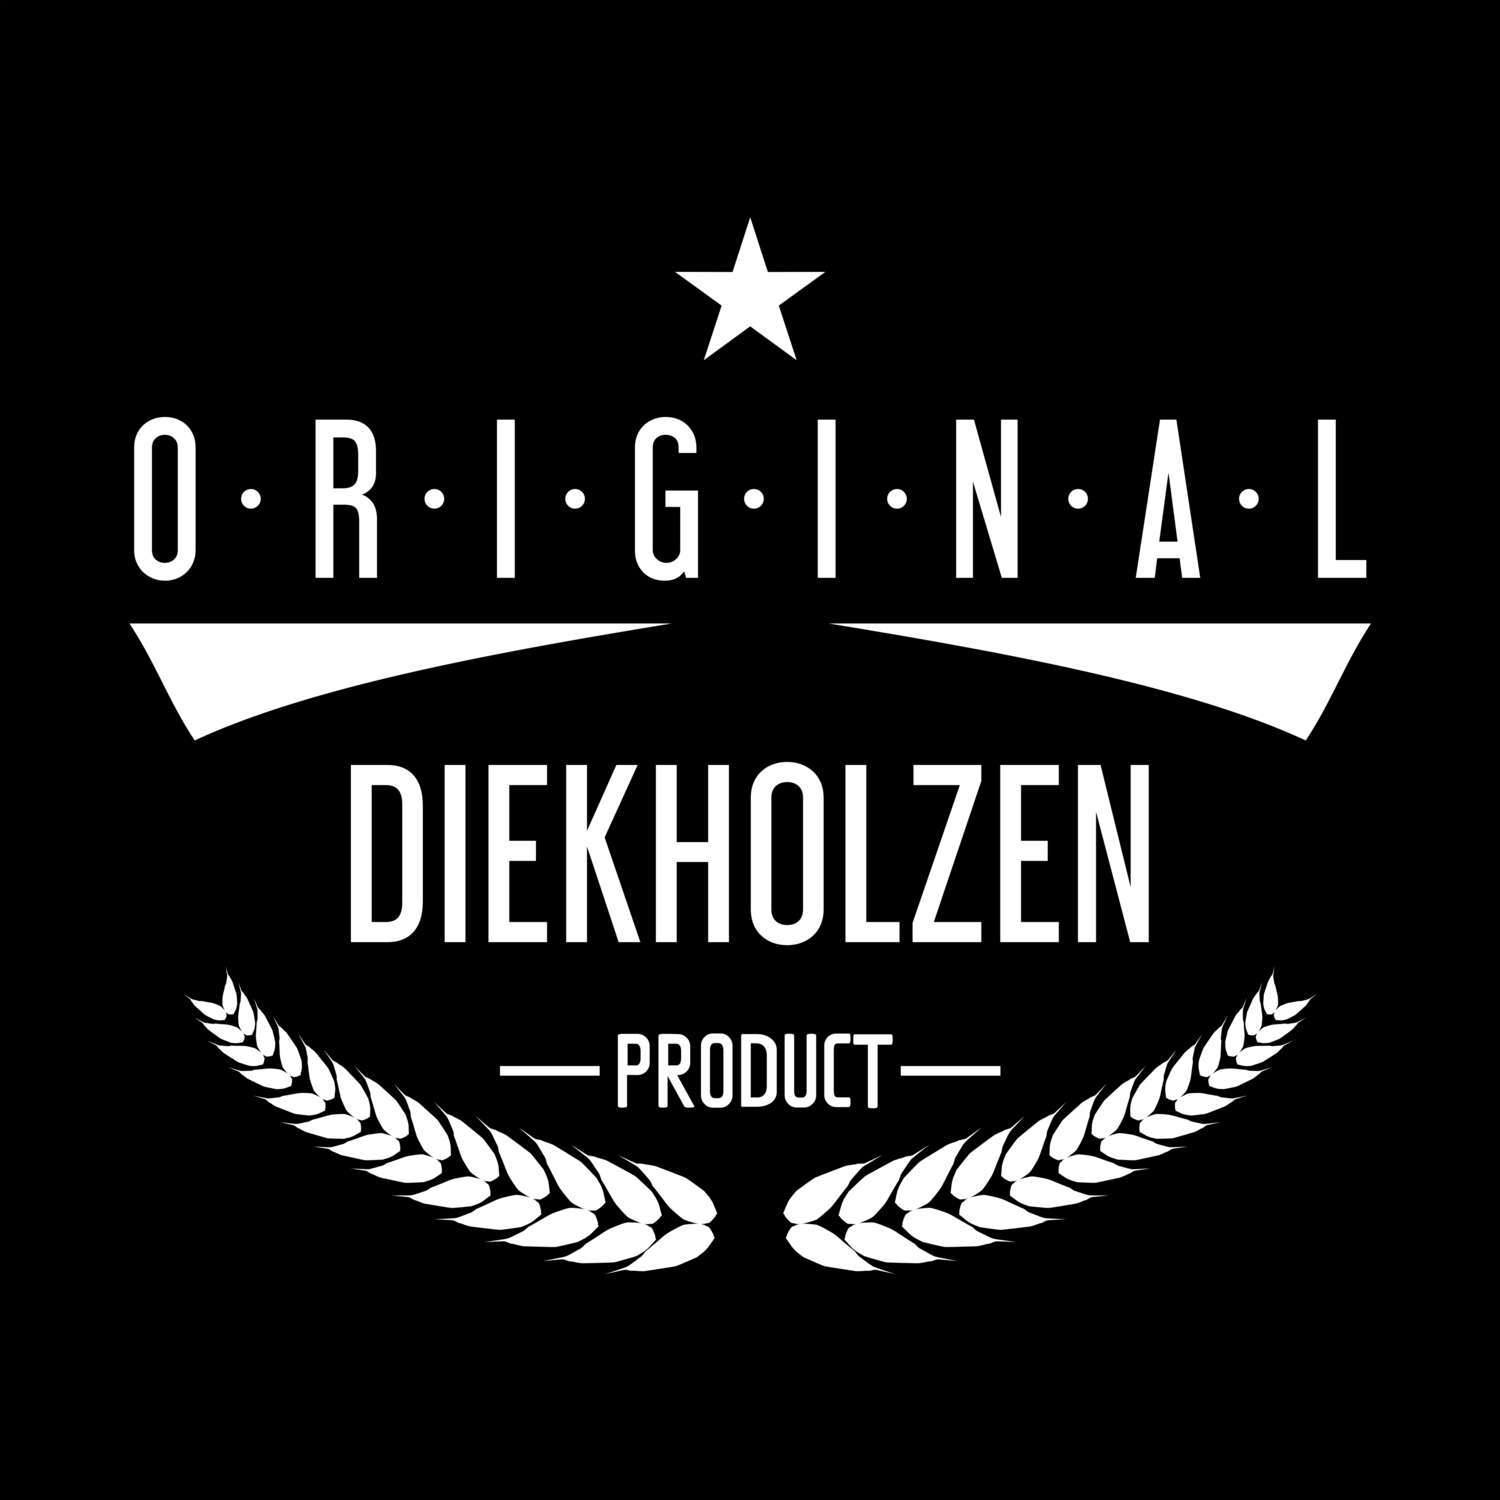 Diekholzen T-Shirt »Original Product«